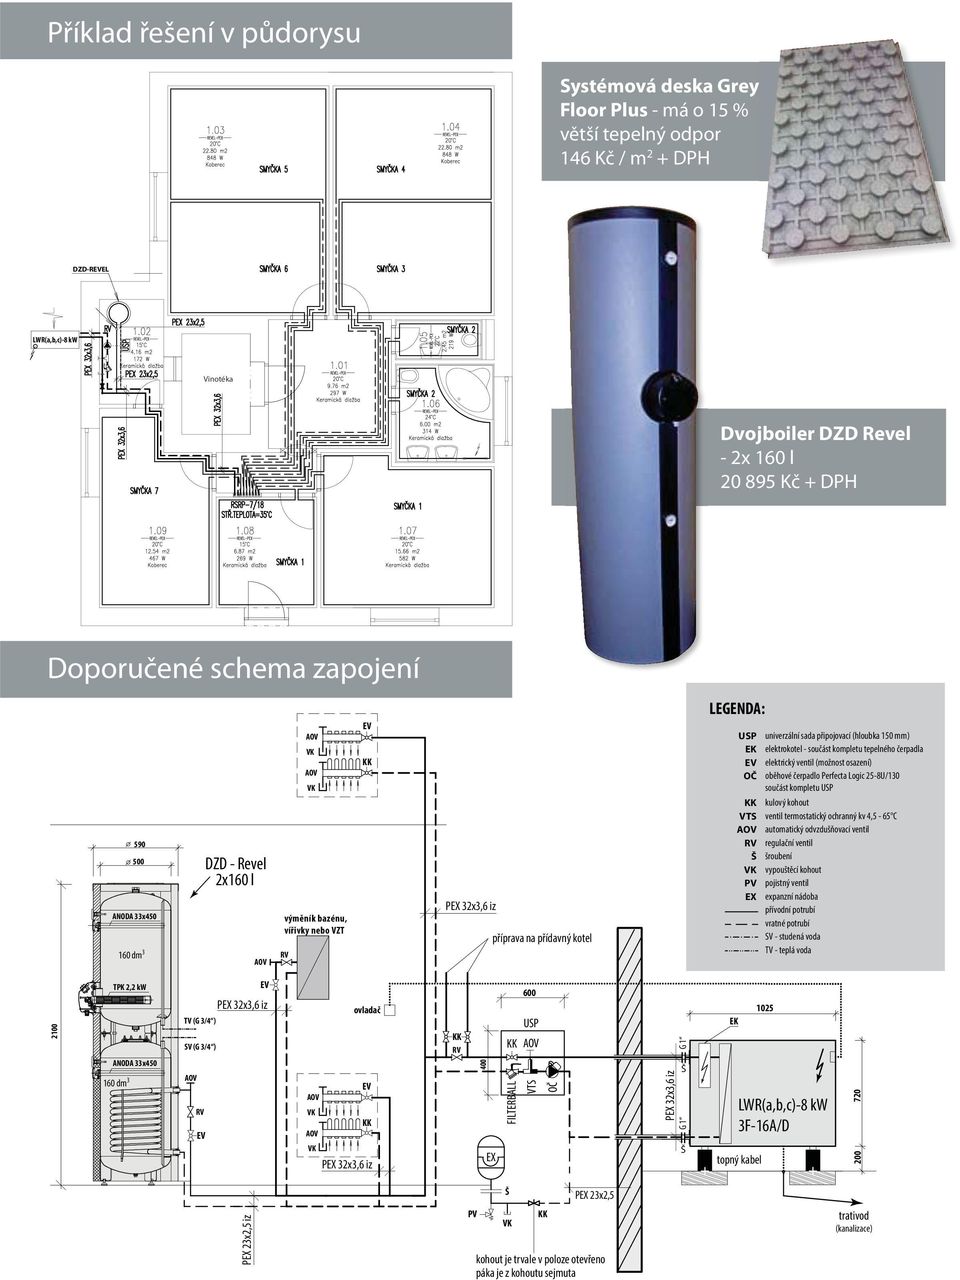 (hloubka 150 mm) elektrokotel - součást kompletu tepelného čerpadla elektrický ventil (možnost osazení) oběhové čerpadlo Perfecta Logic 25-8U/130 součást kompletu USP kulový kohout ventil